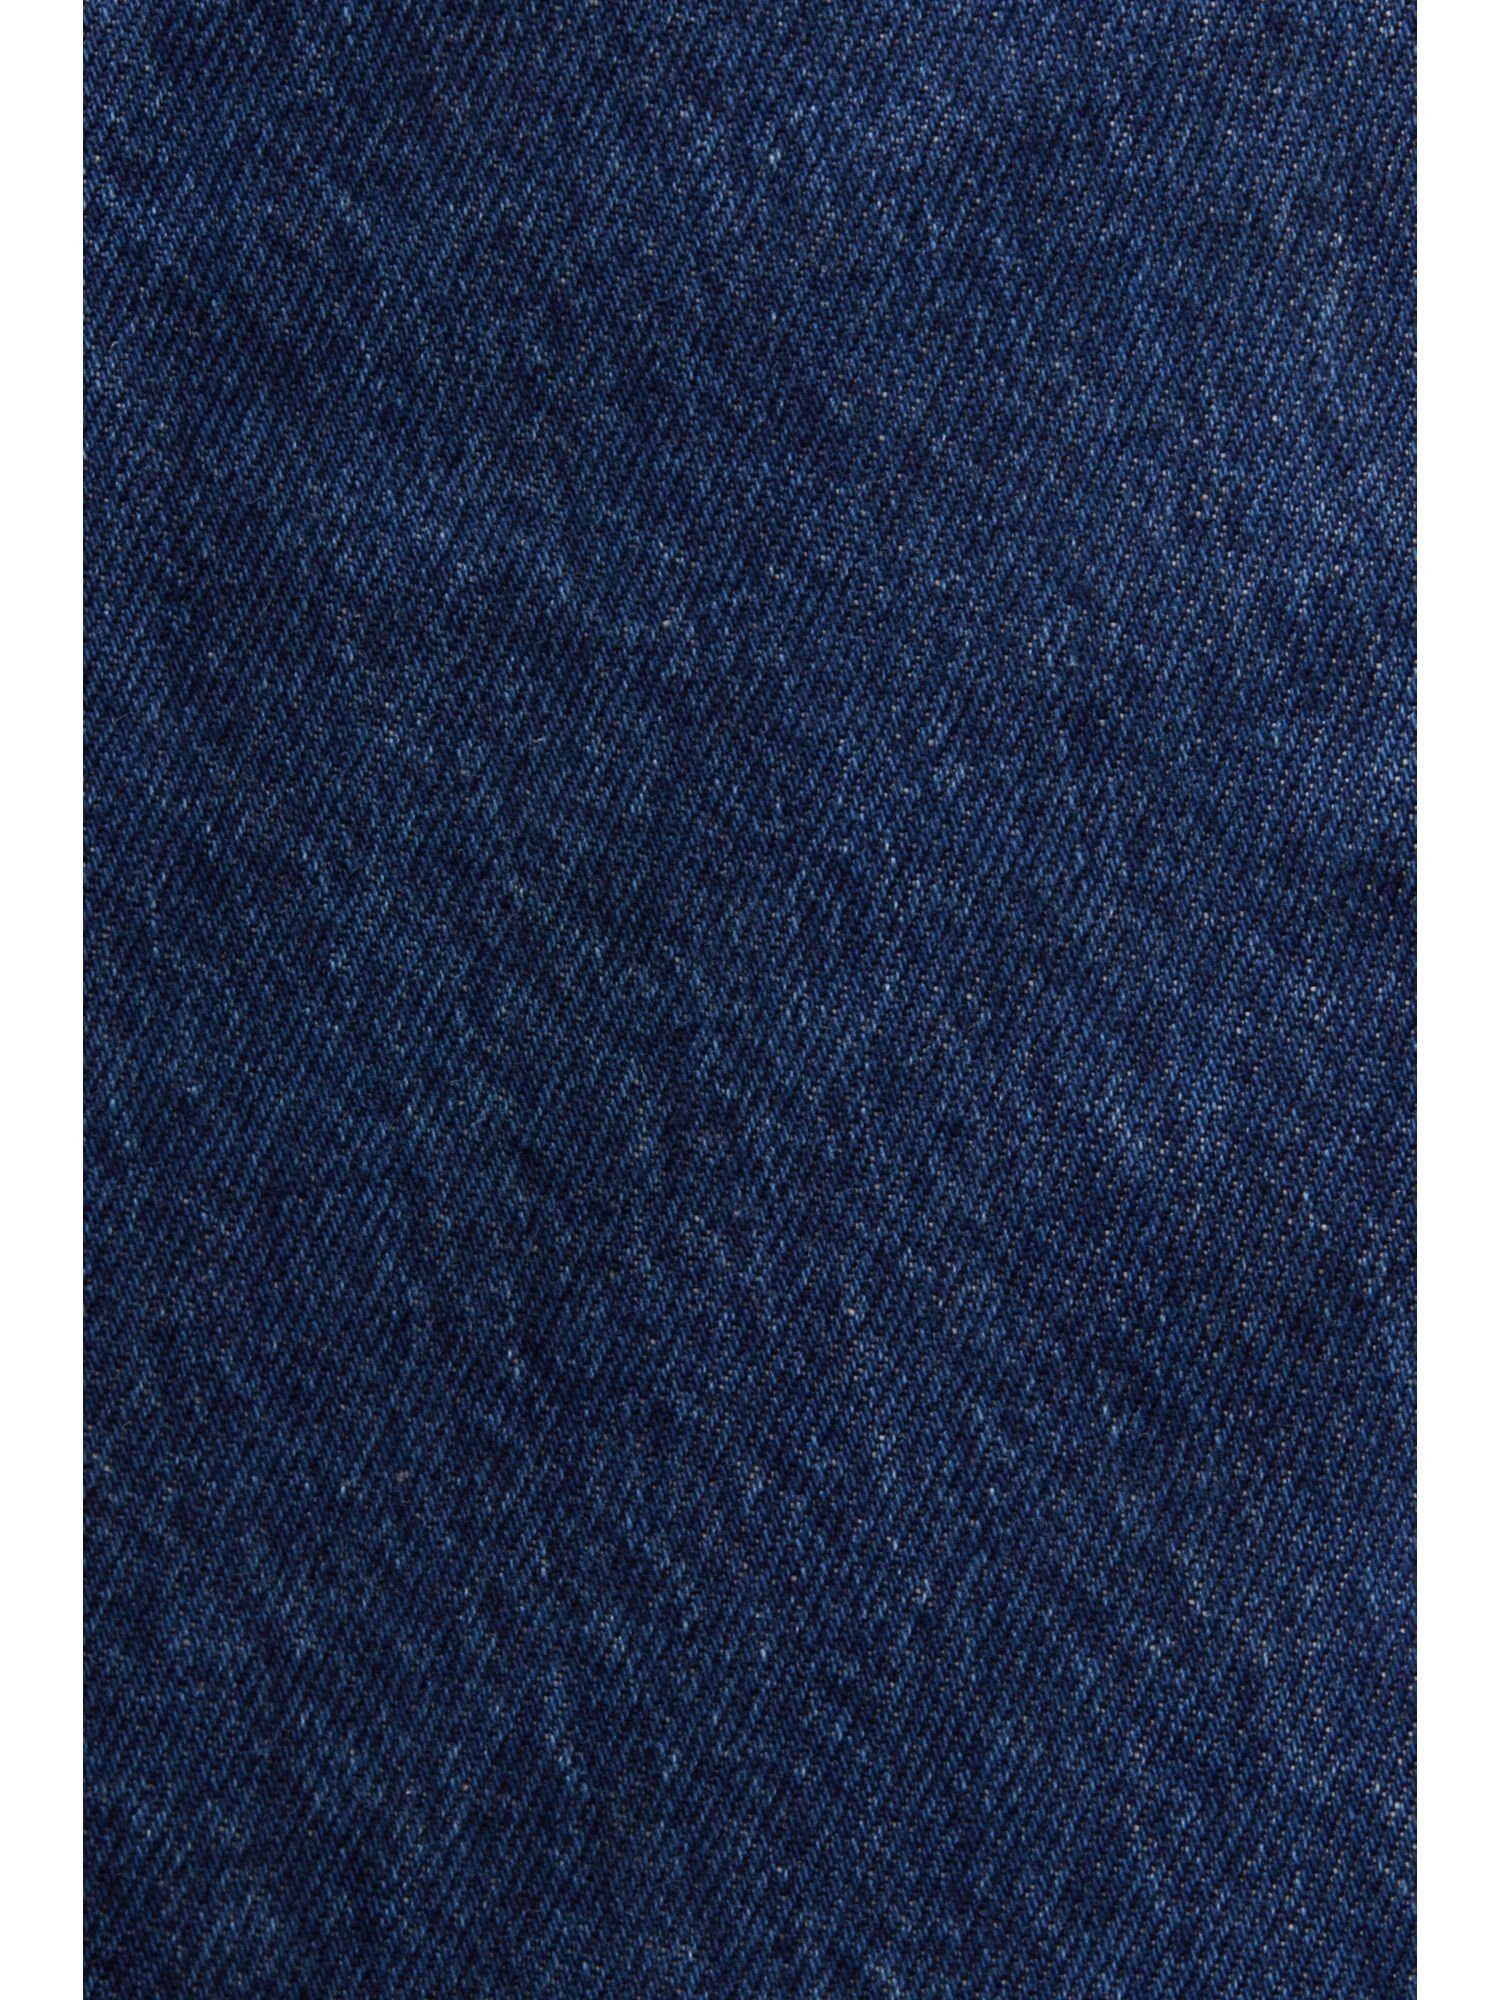 Esprit Bequeme und gerader Passform hohem mit Jeans Bund Jeans